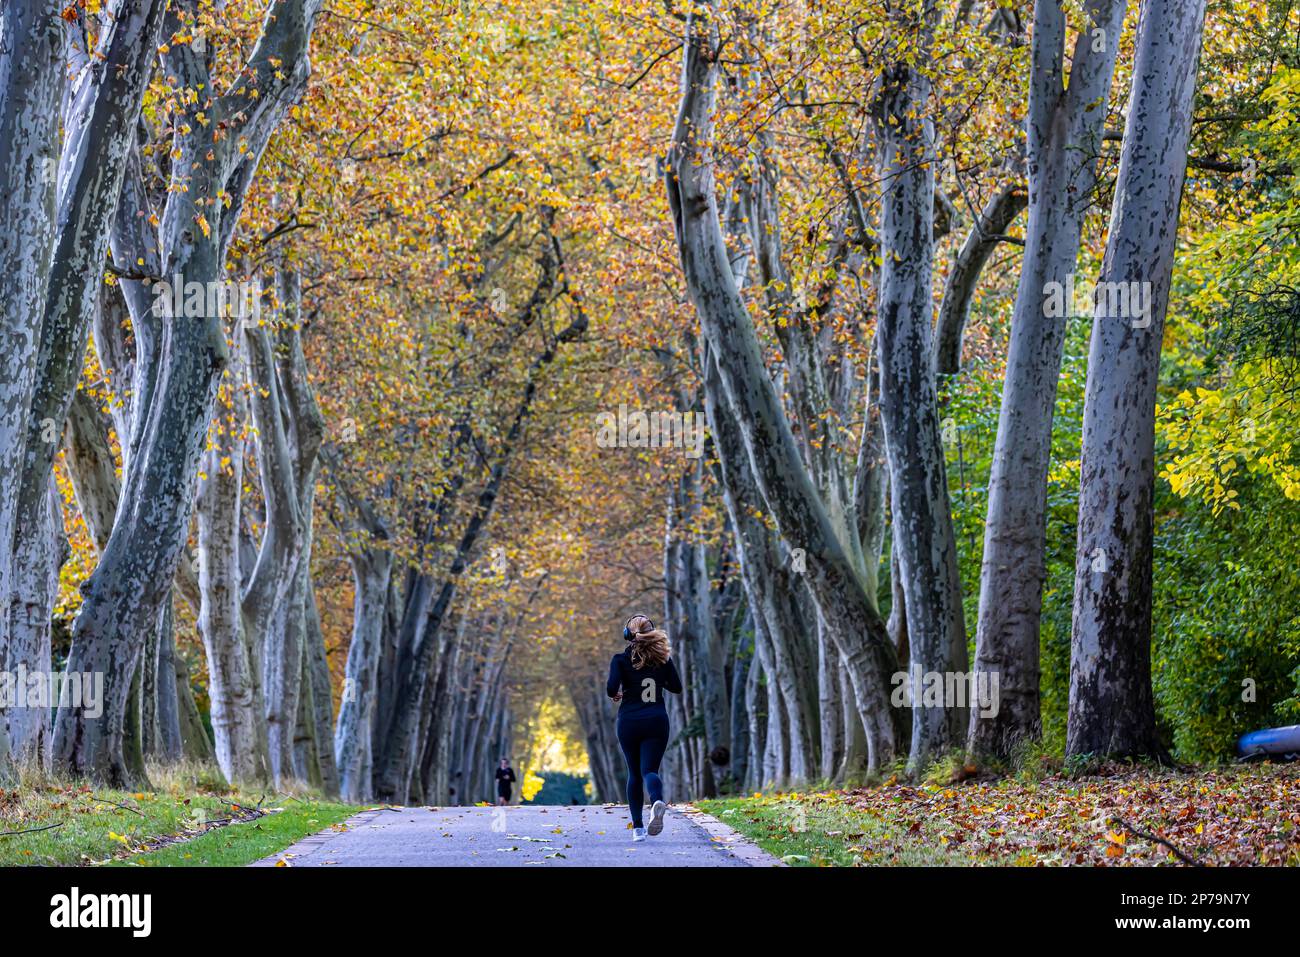 Autunno nel giardino del palazzo inferiore, viale di platani con alberi dai colori colorati dell'autunno, una donna che fa jogging, Stoccarda, Baden-Wuerttemberg Foto Stock